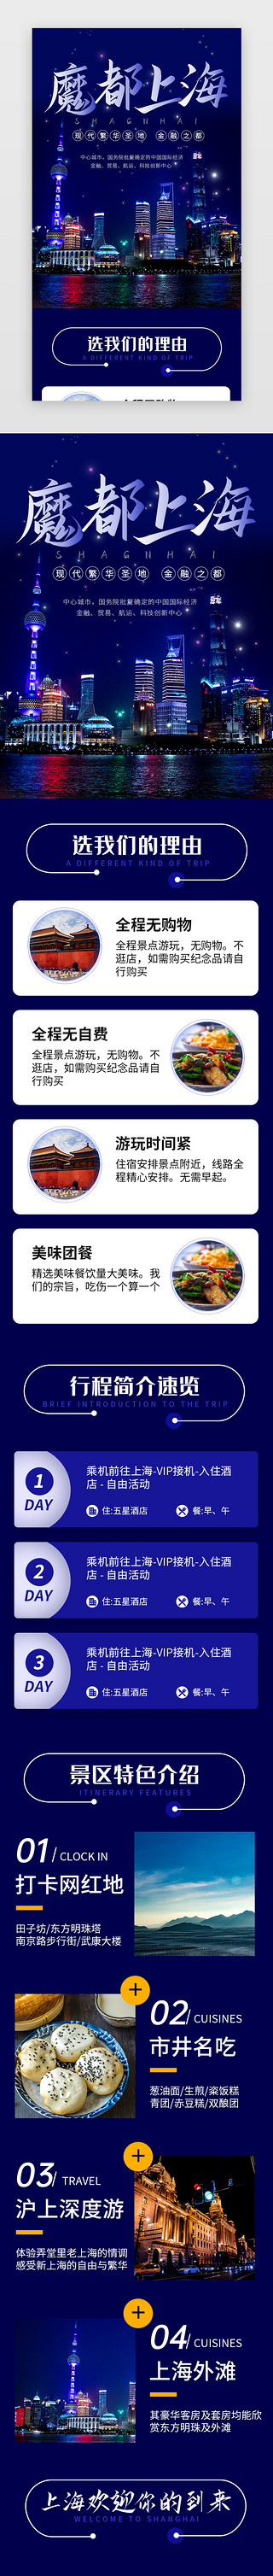 学校介绍ppt模板免费UI设计素材_蓝色魔都上海旅行景点介绍H5长图海报